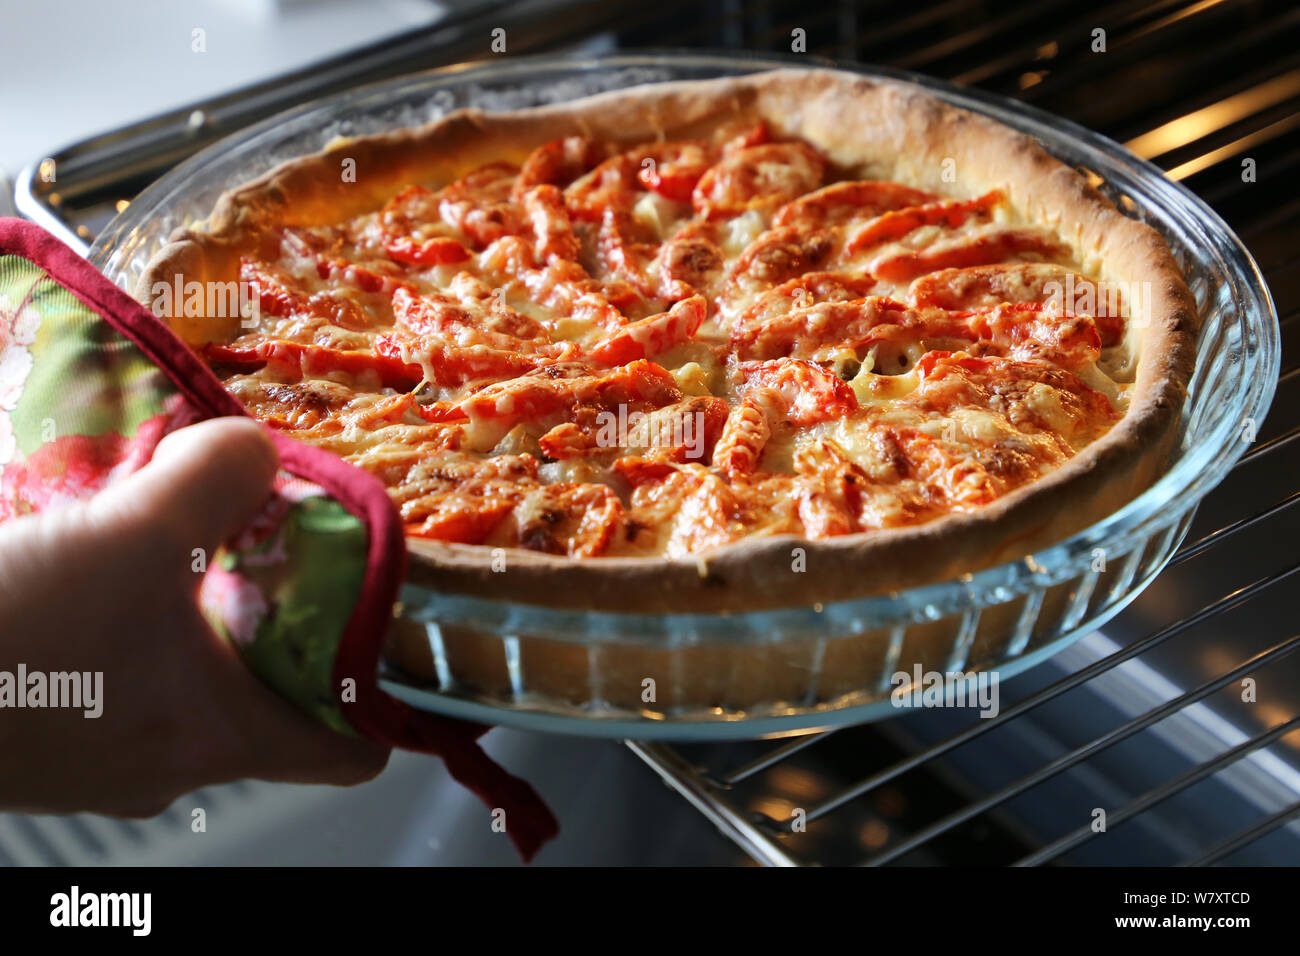 La cuisson de la pizza, la femme prend le gâteau fraîchement cuit au four avec du fromage, de la viande et les tomates de four électrique Banque D'Images